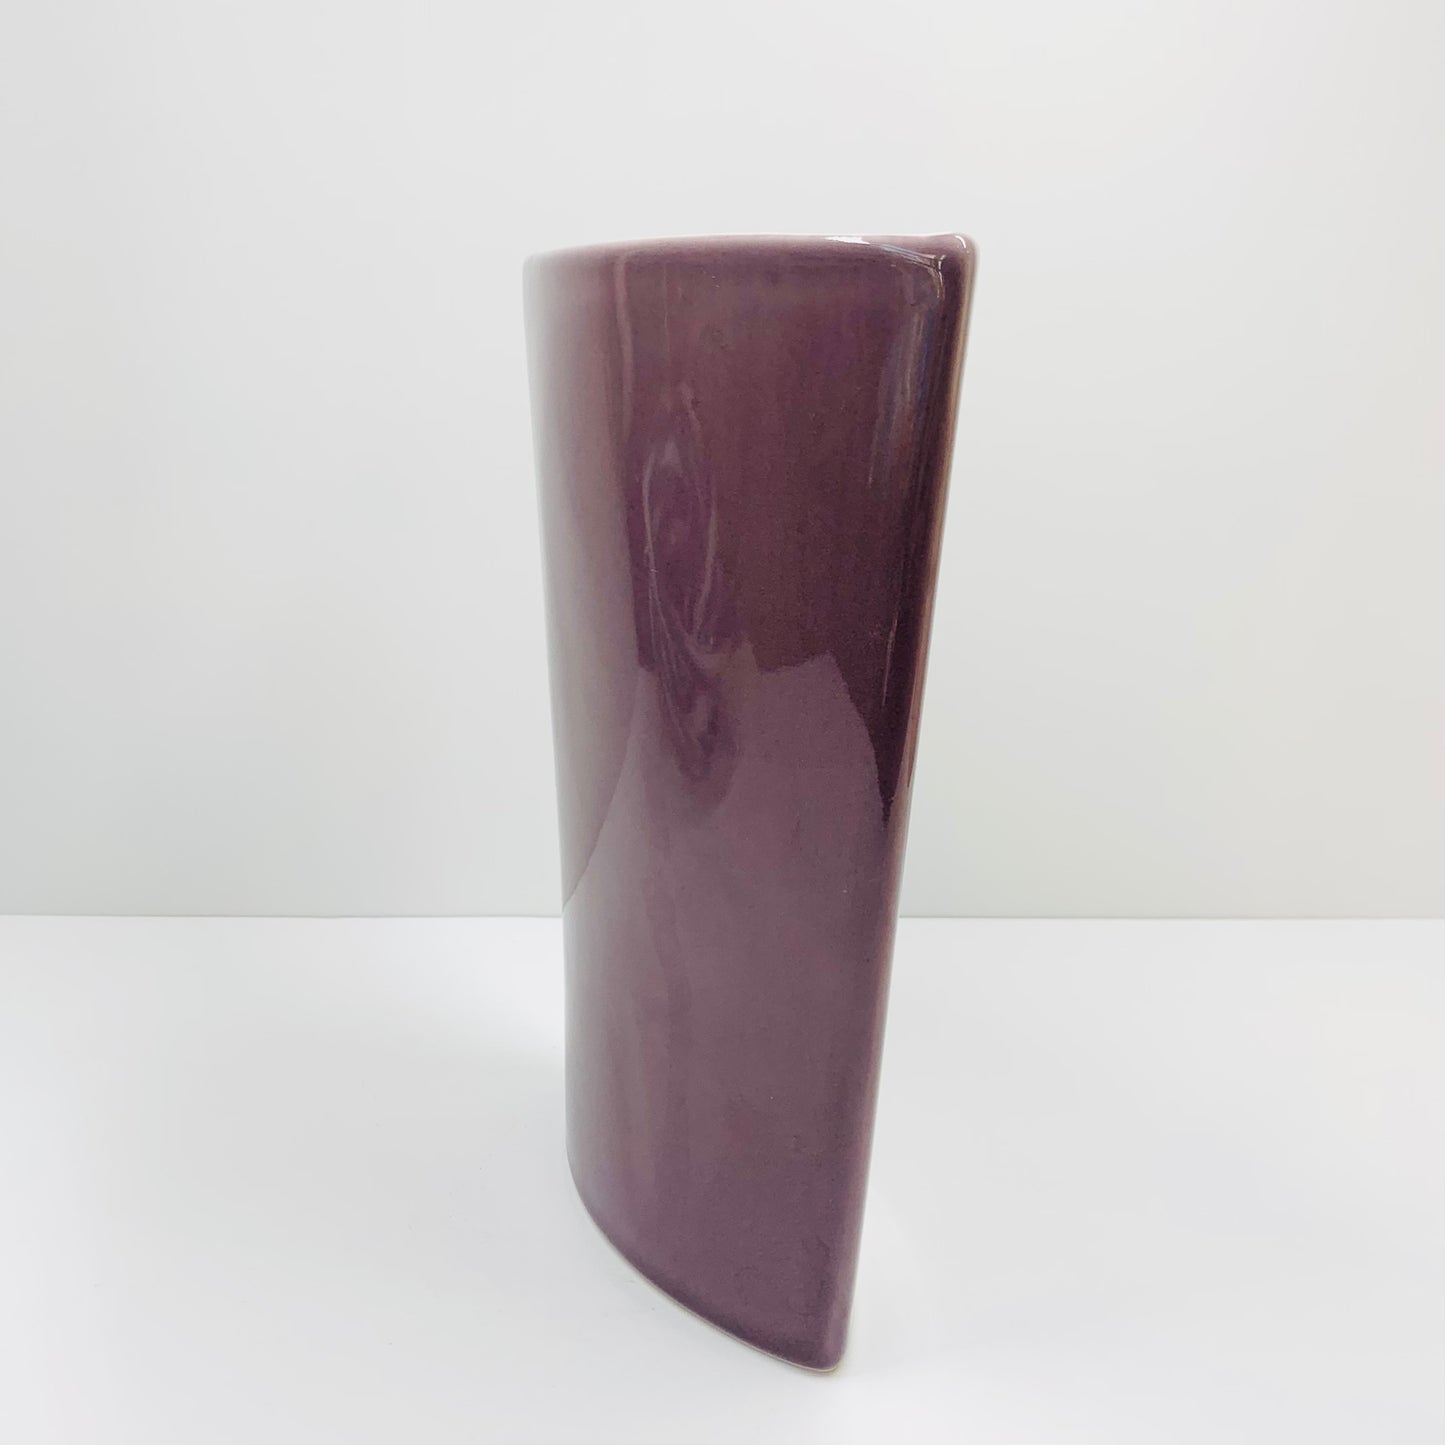 Space Age Thai purple porcelain vase